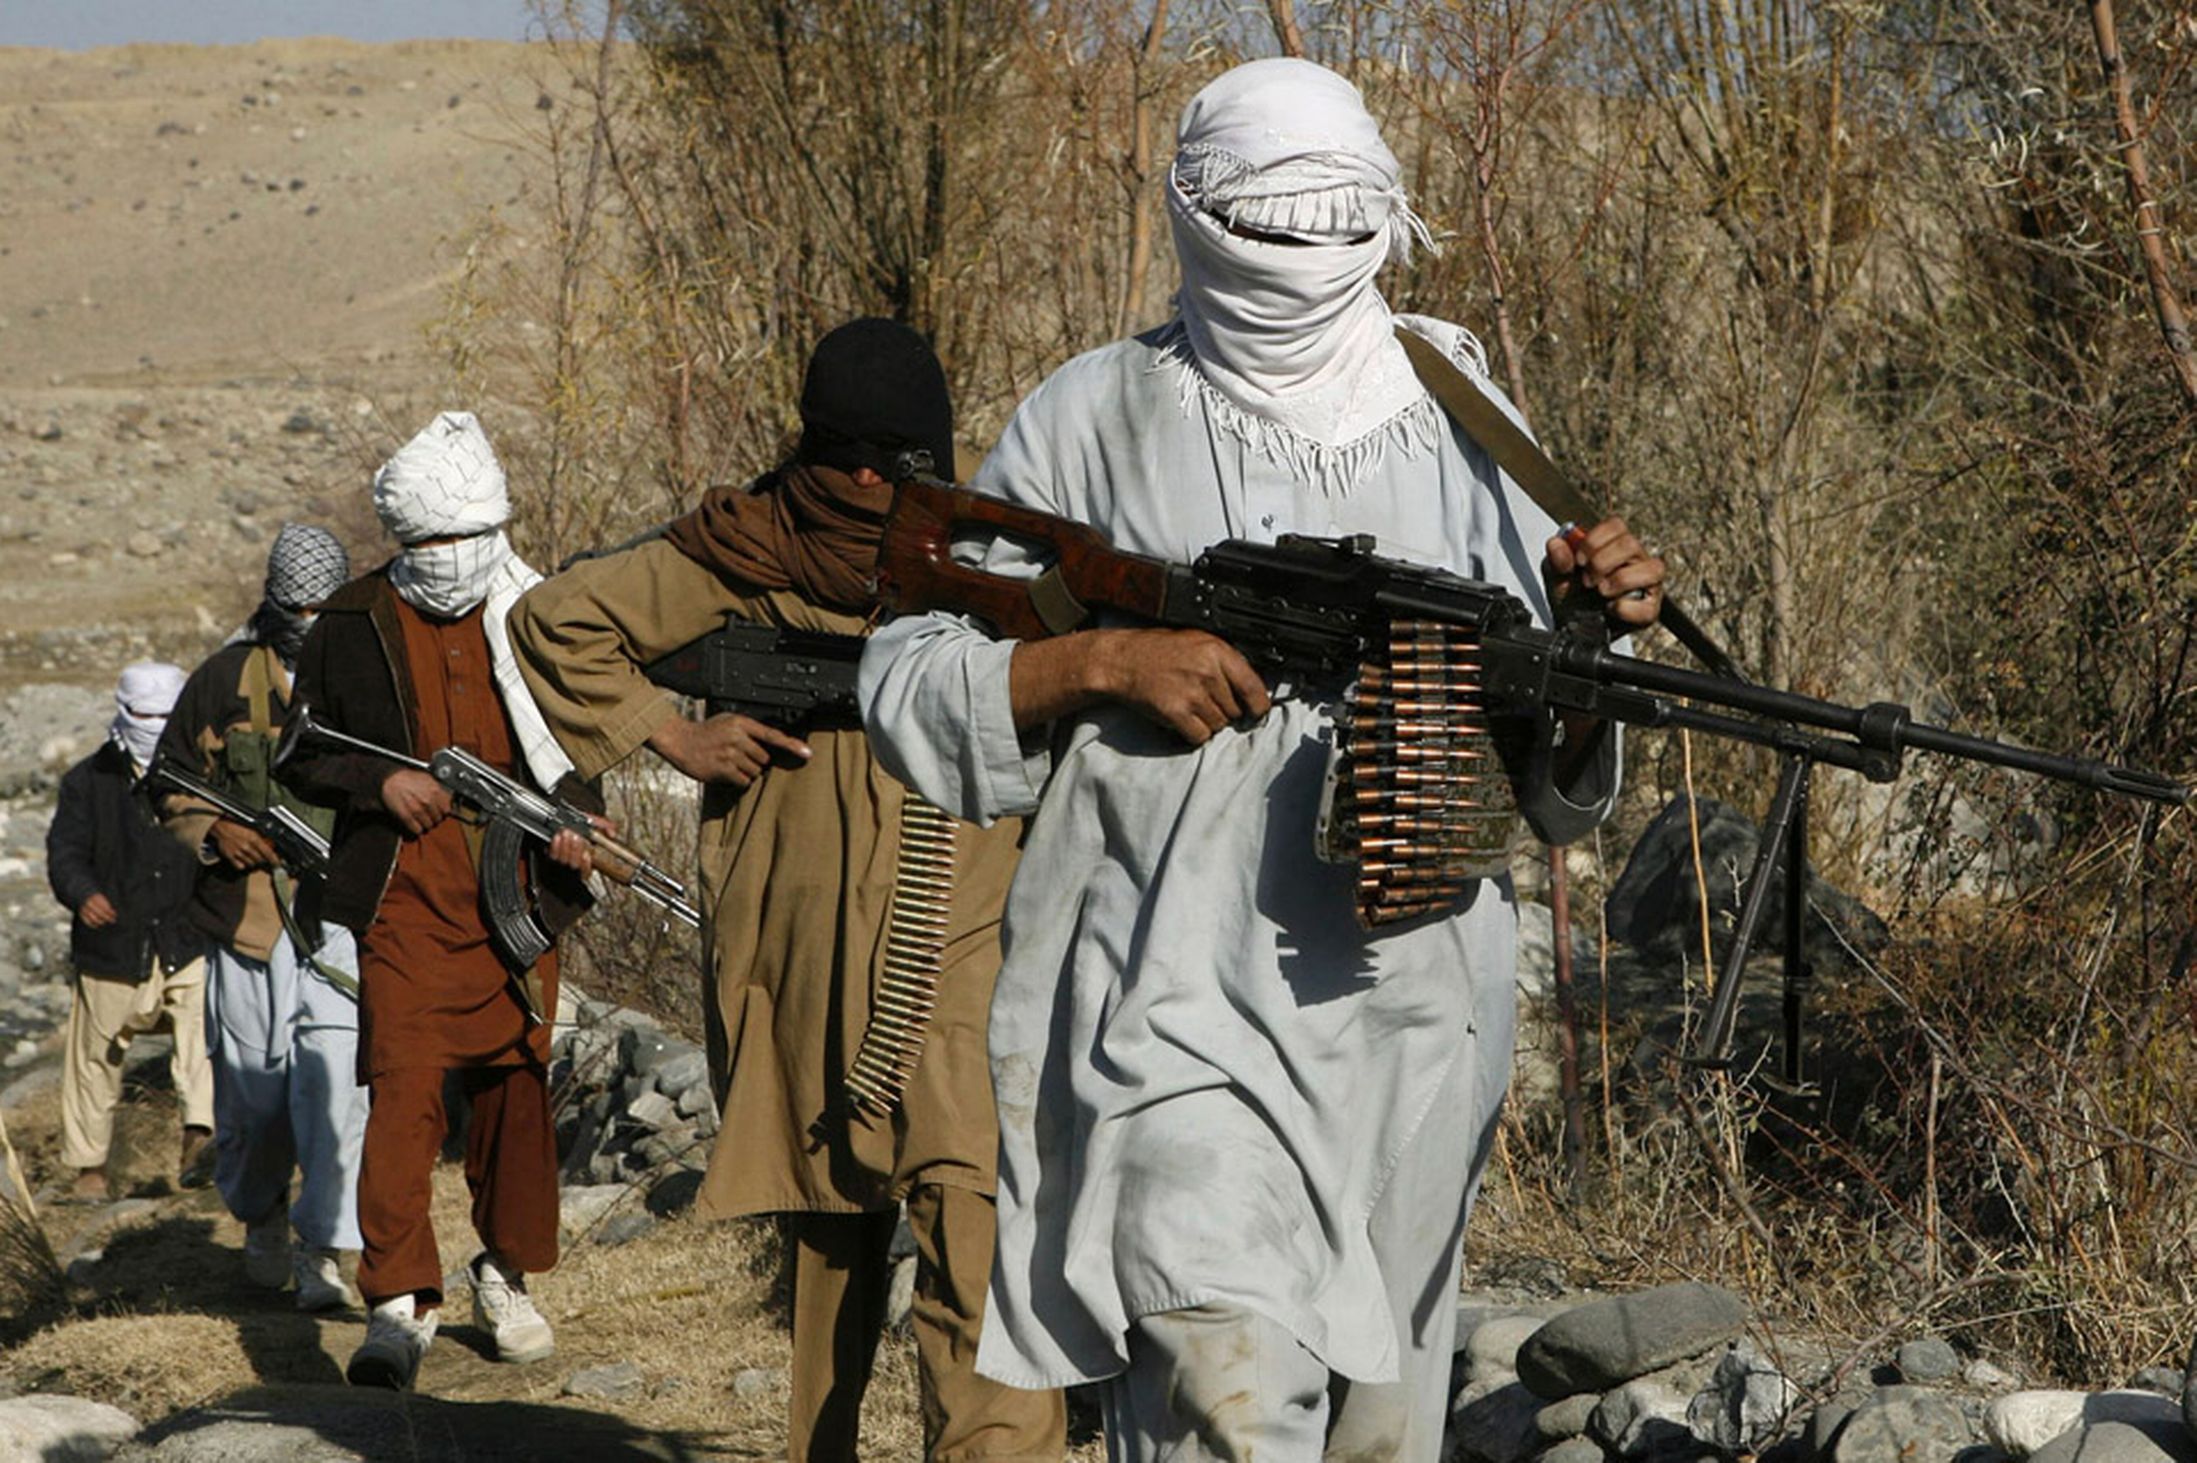 Οι Ταλιμπάν στρατολογούν παιδιά στις περιοχές που καταλαμβάνουν